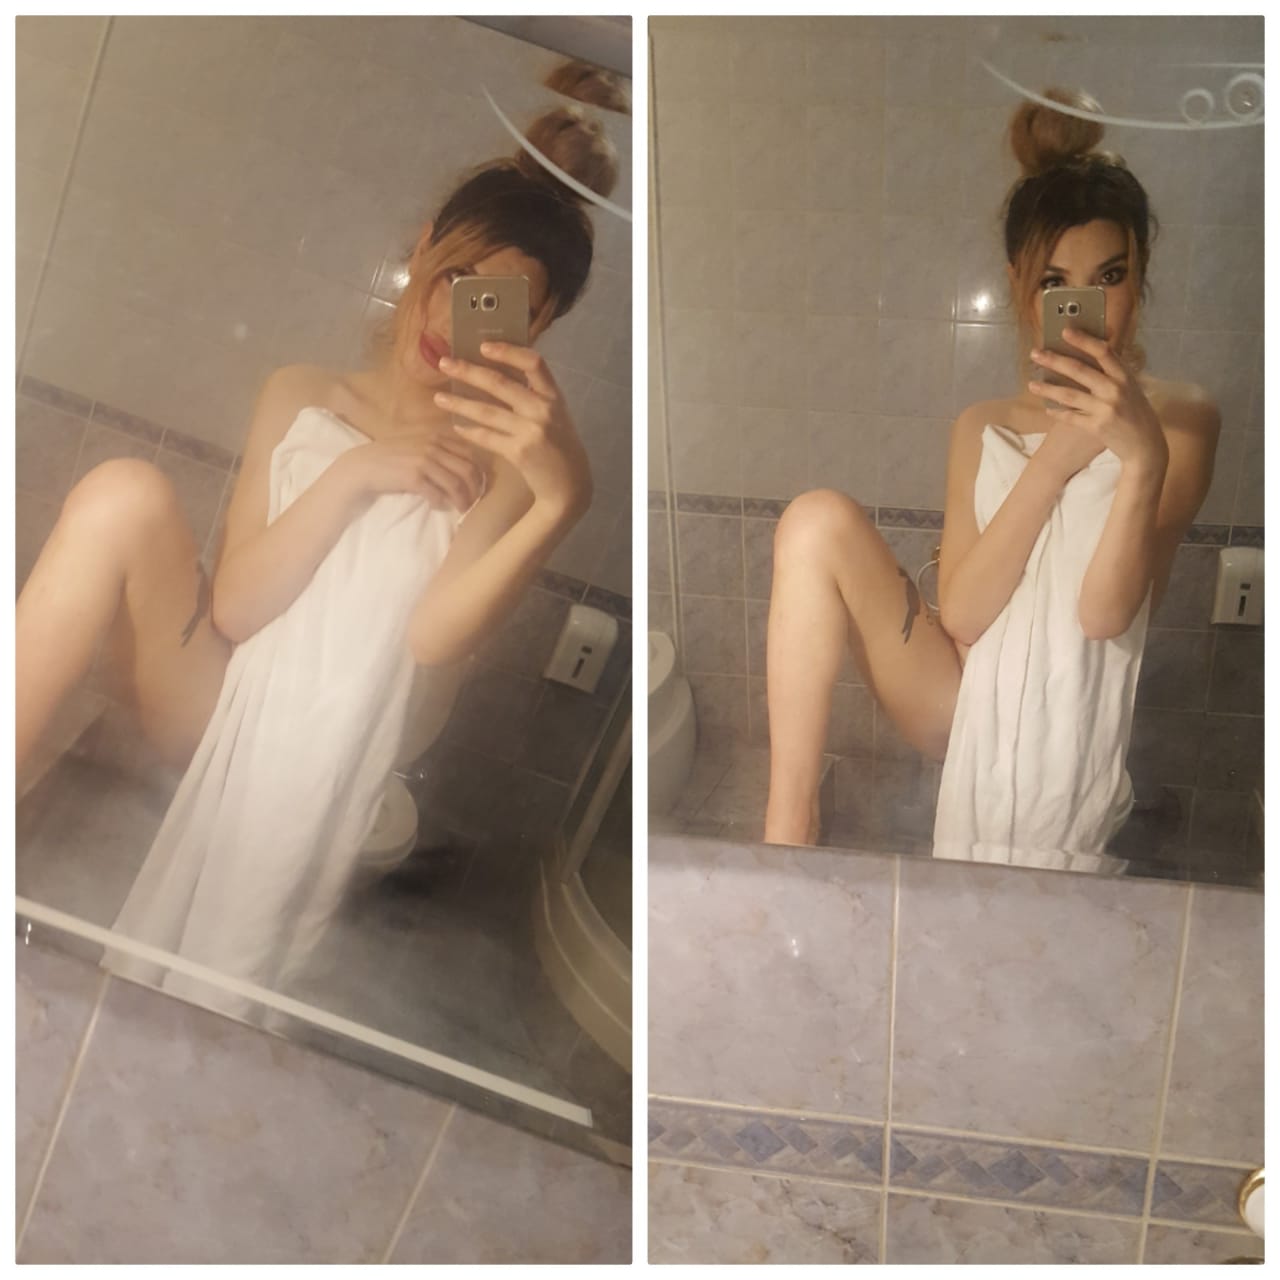 транссексуалка в ванной москва проститутка